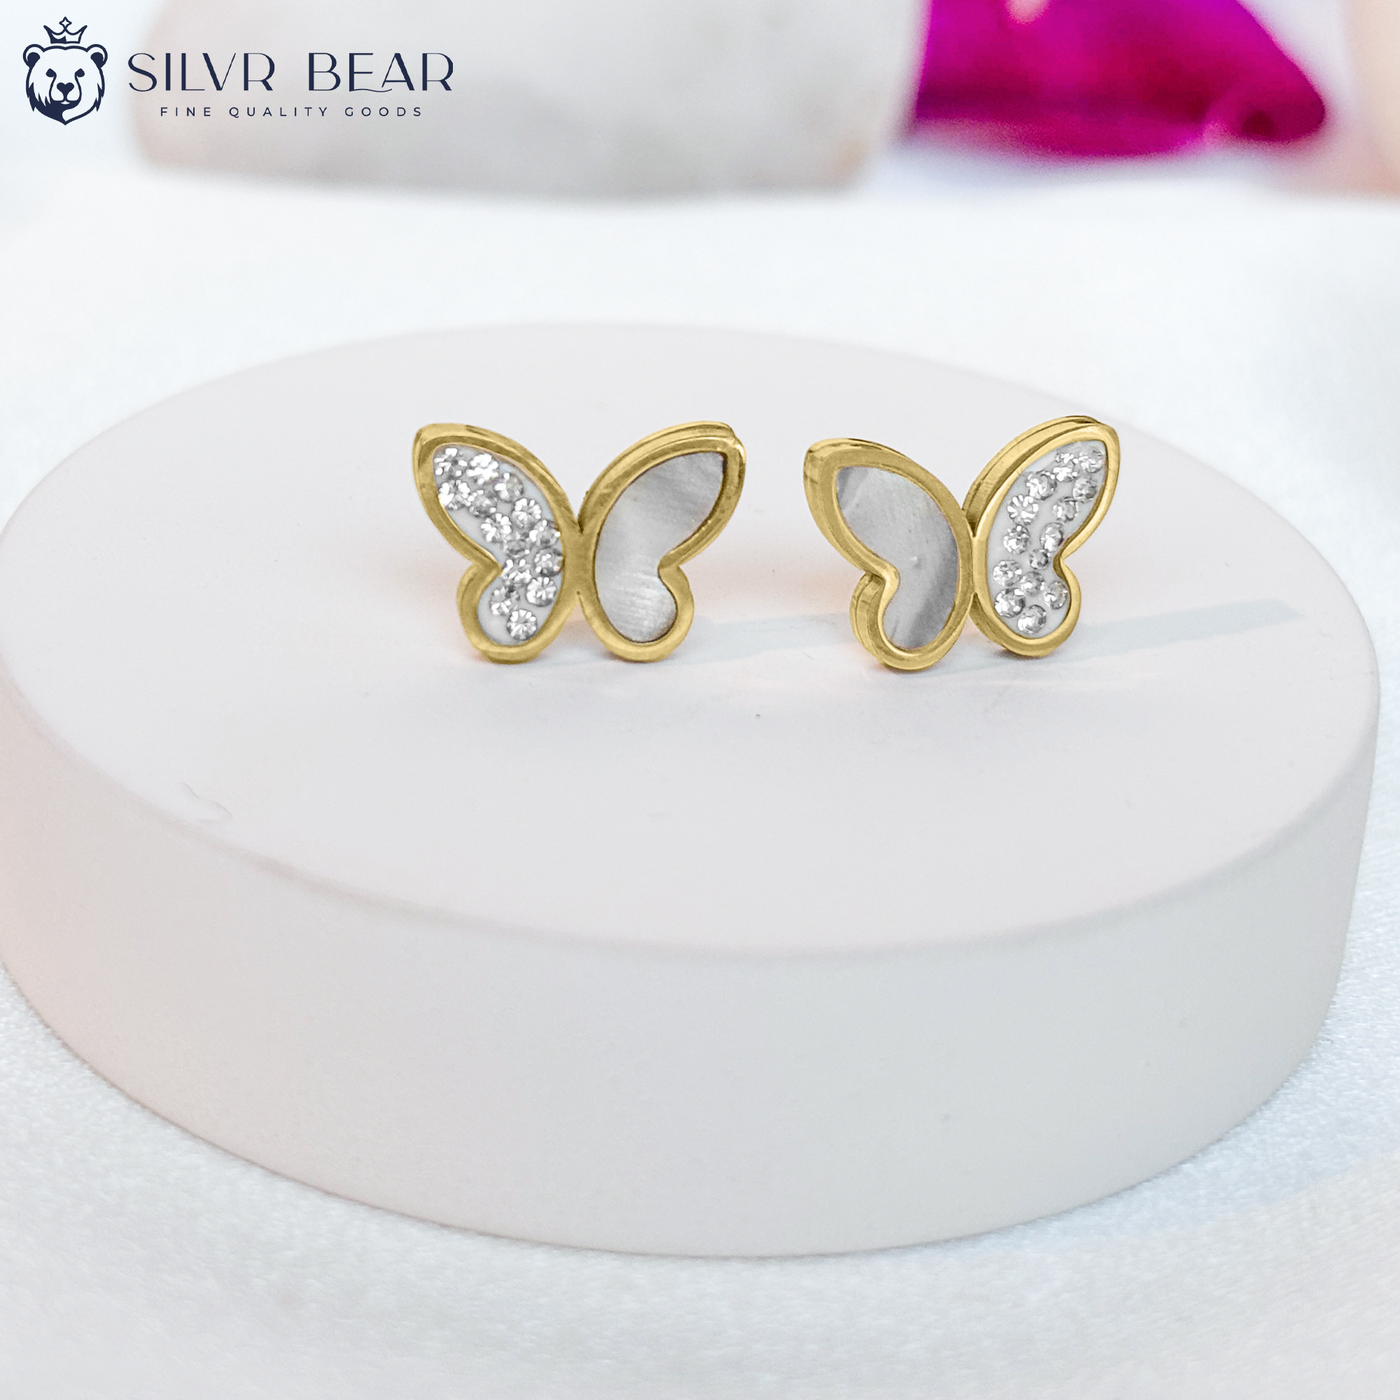 Butterfly Stud Earrings - Gold tone